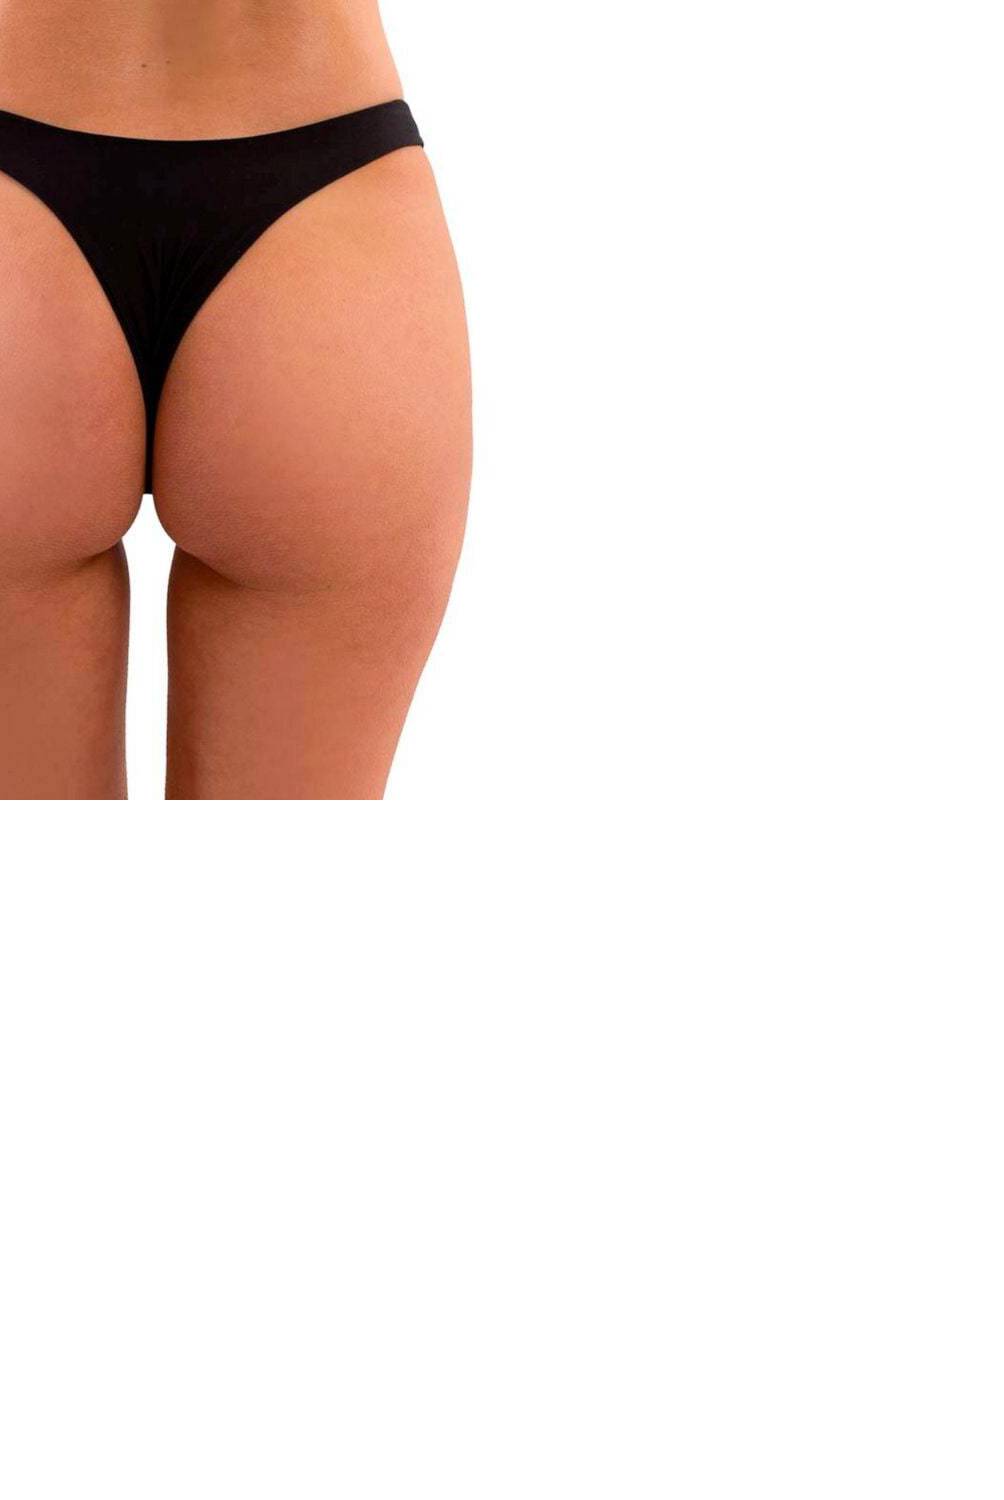 JOSE HERRERA BIKINIS - Bikini Bottom Mujer